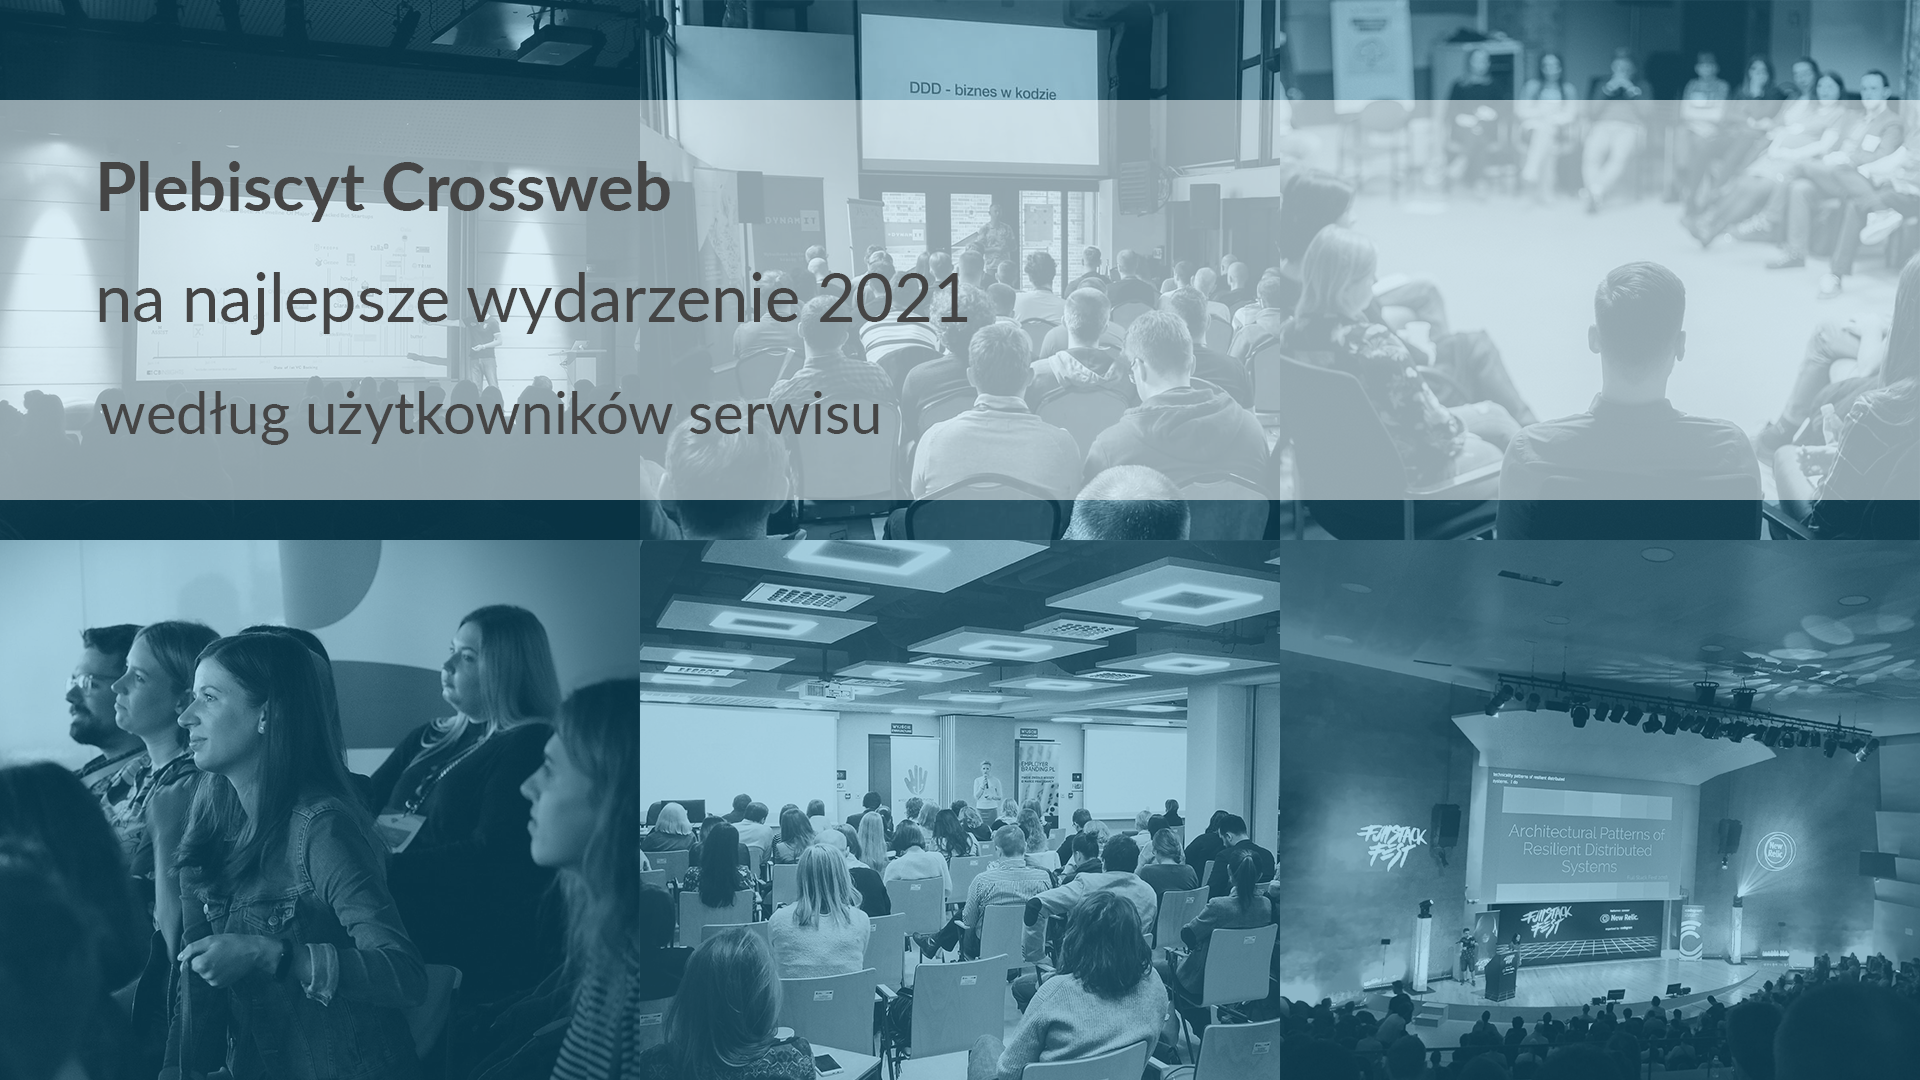 Plebiscyt Crossweb na najlepsze wydarzenie 2021 według użytkowników serwisu